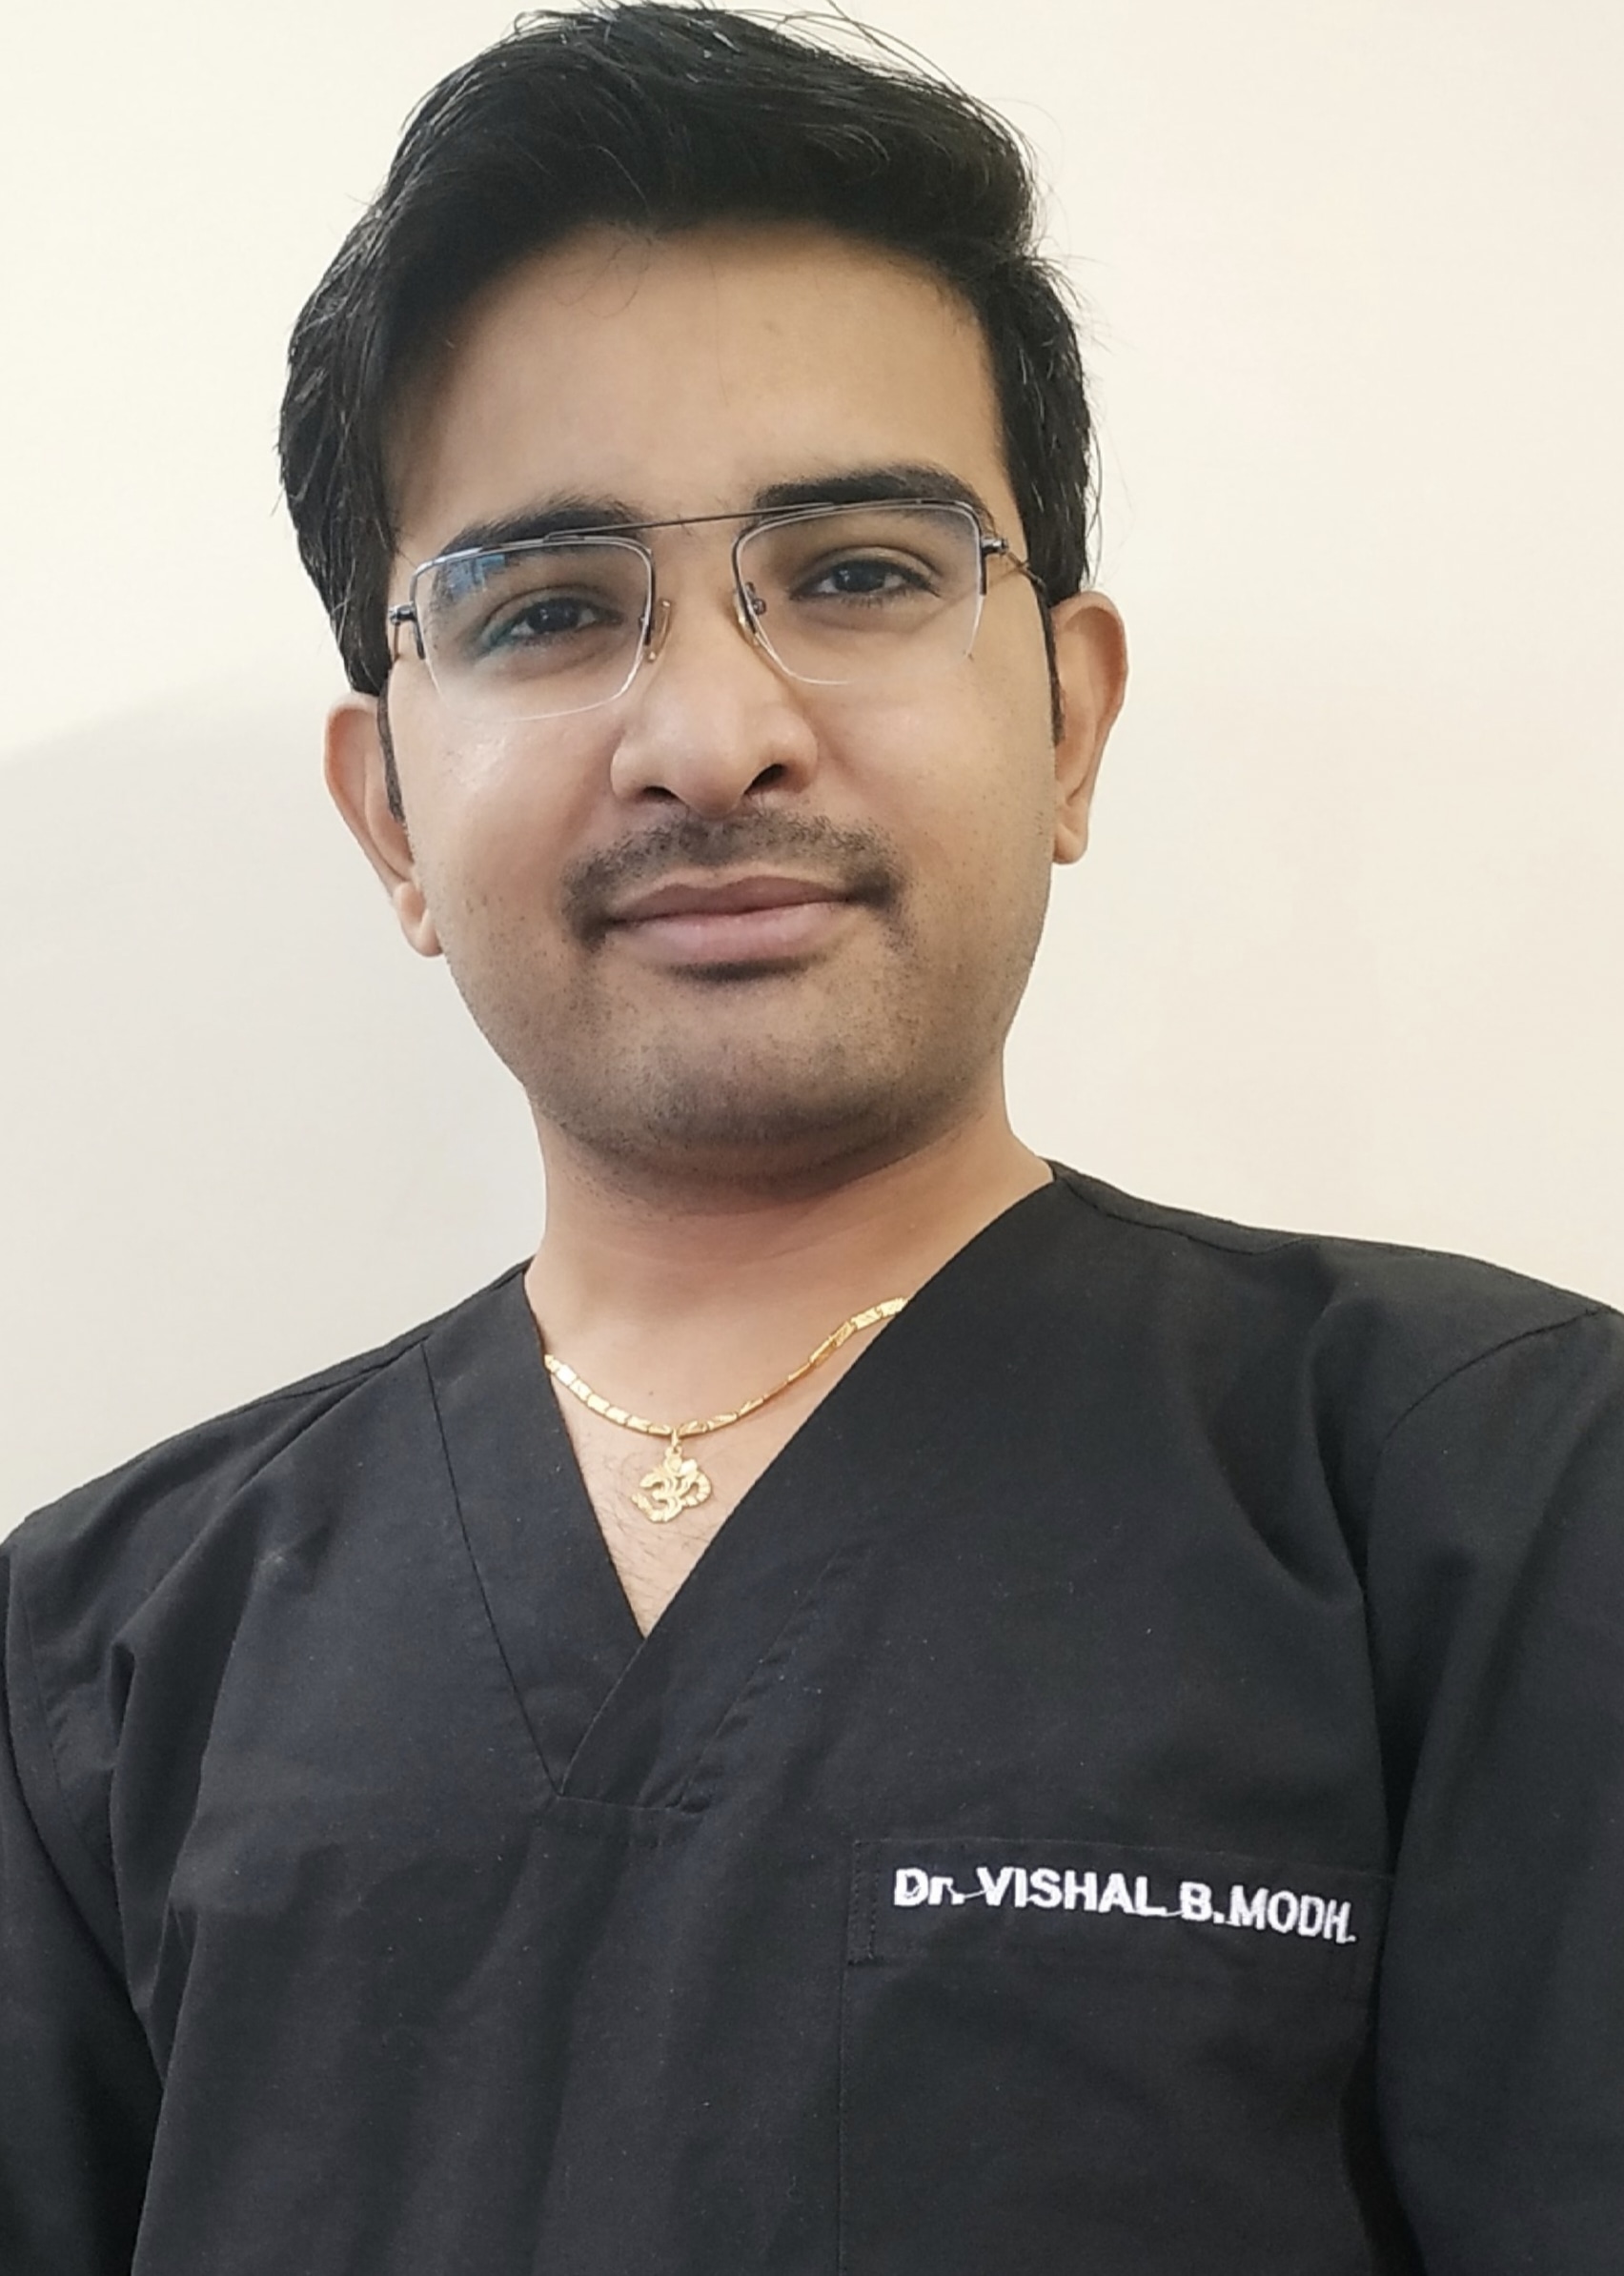 Dr. Vishal B Modh